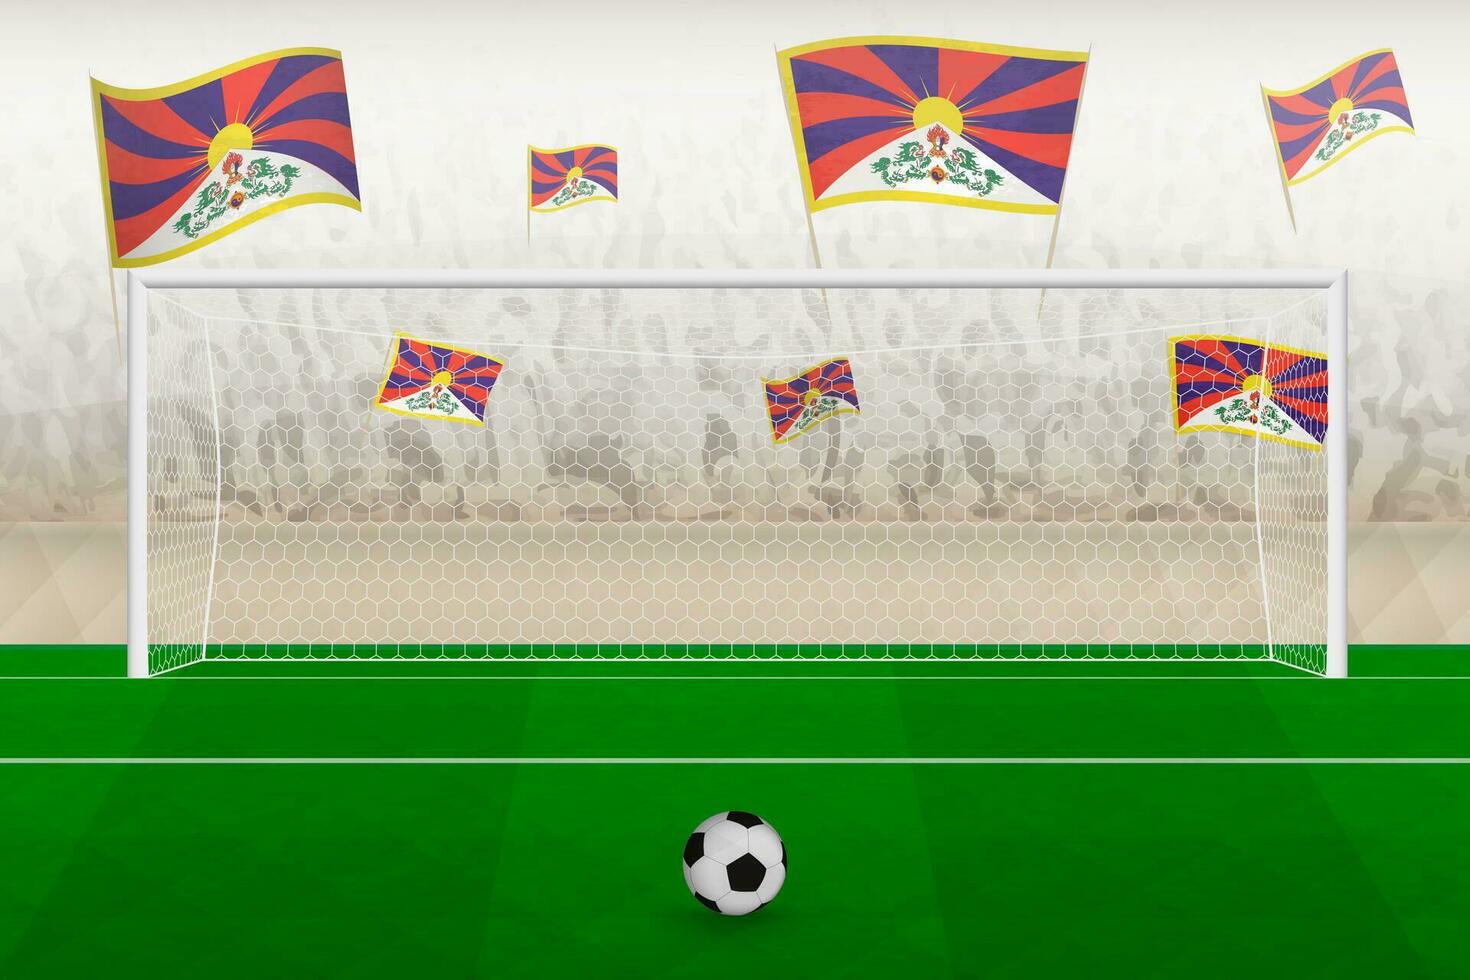 Tíbet fútbol americano equipo aficionados con banderas de Tíbet aplausos en estadio, multa patada concepto en un fútbol fósforo. vector